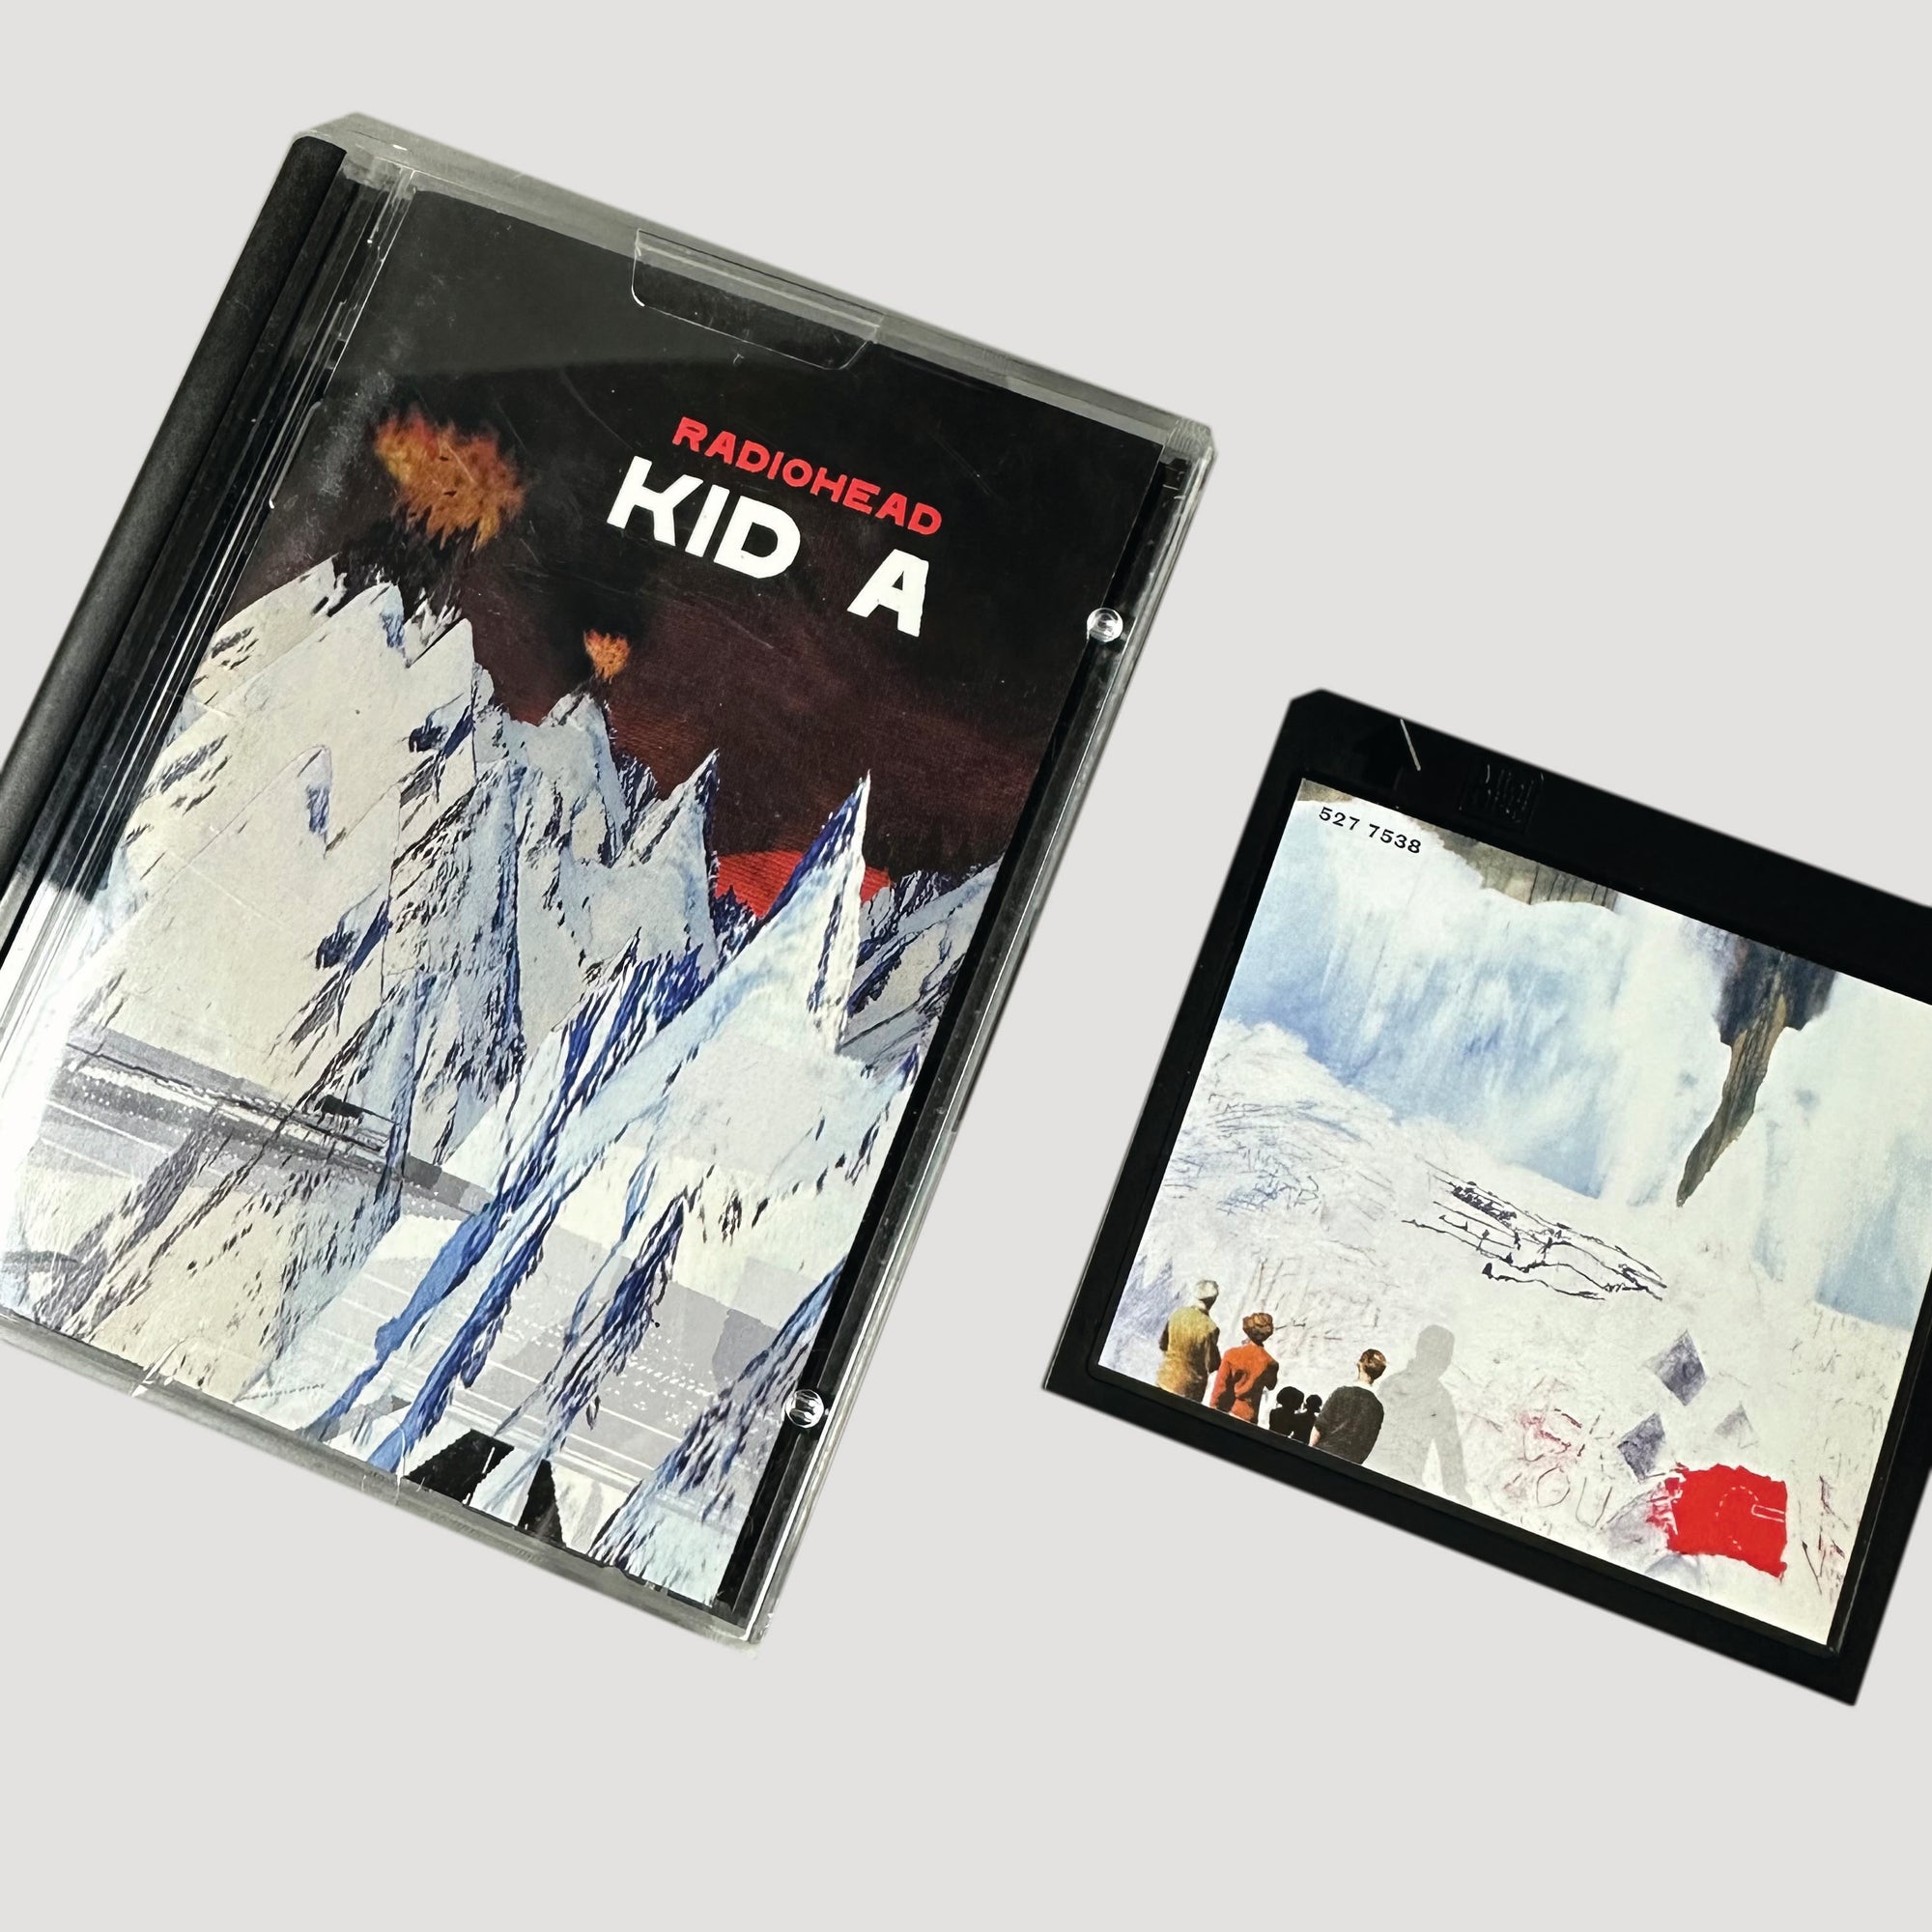  Radiohead: Kid A 2x10: CDs y Vinilo